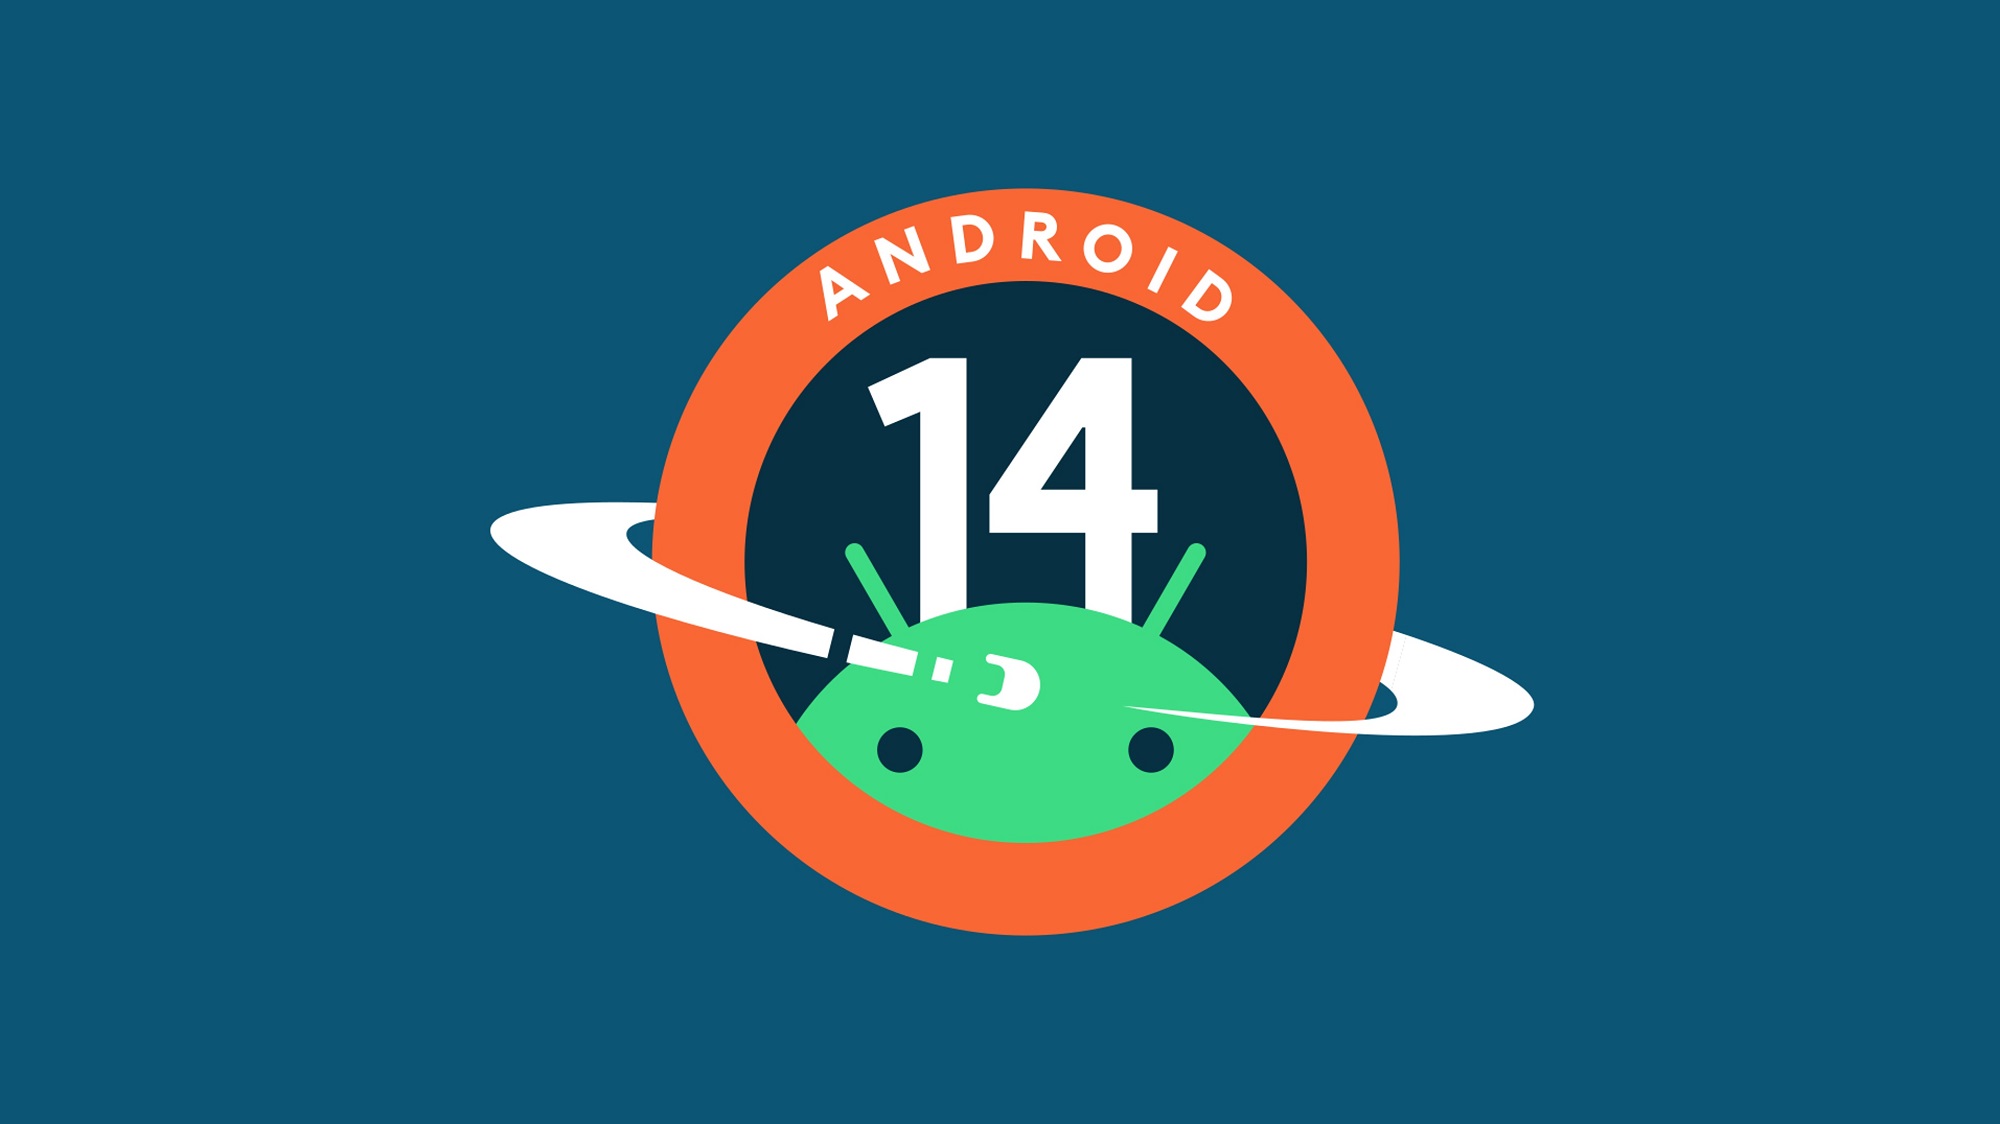 4 oktober: De Canadese operator Telus heeft de releasedatum bekendgemaakt voor de stabiele versie van Android 14